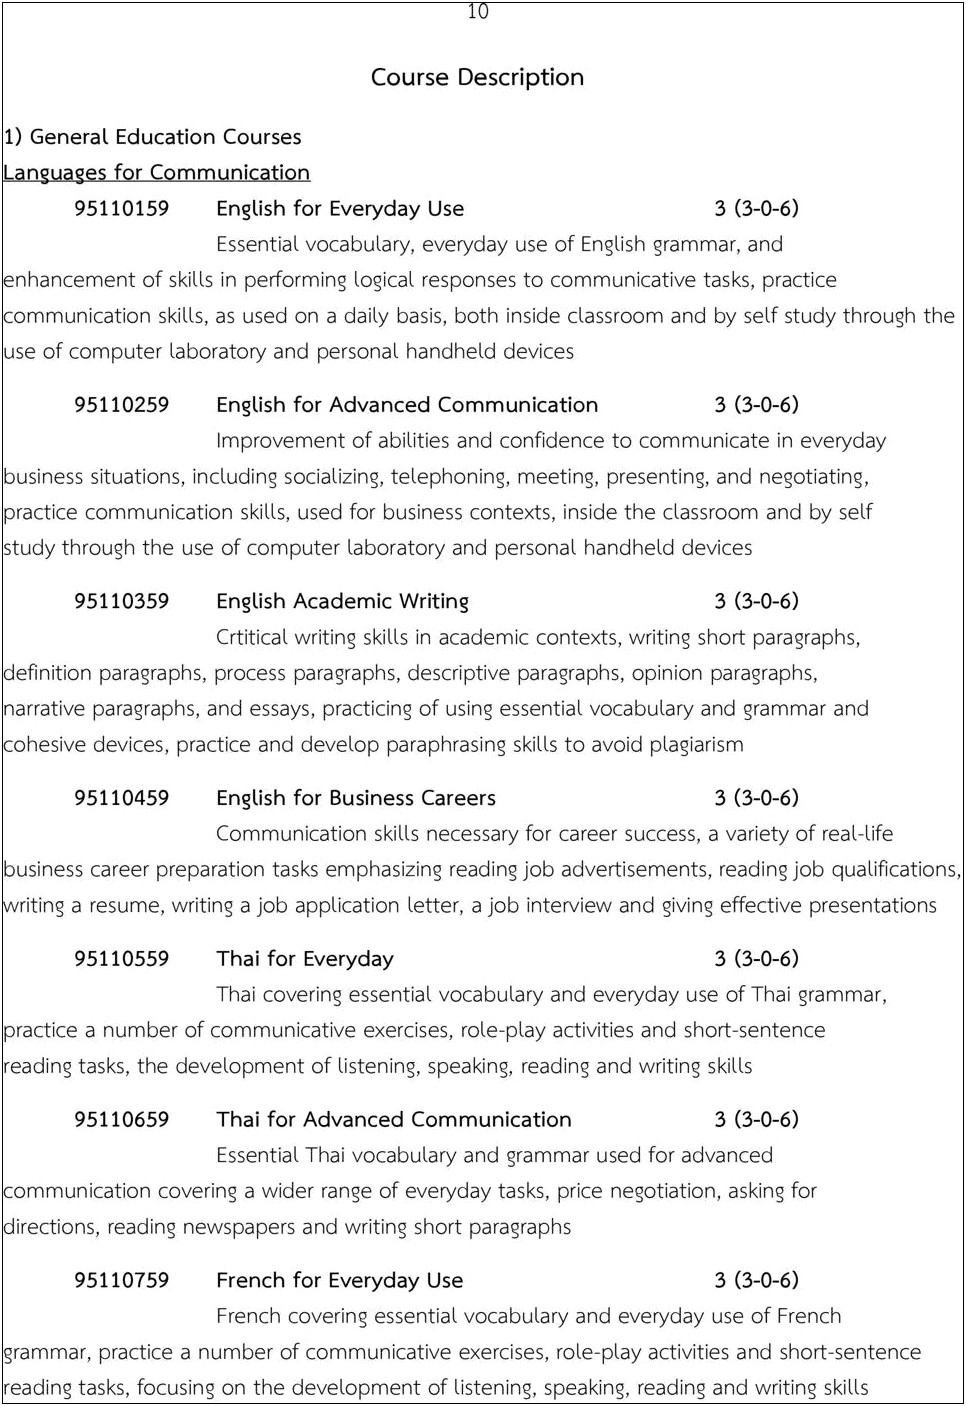 Pharaphrasing Job Description On Resume